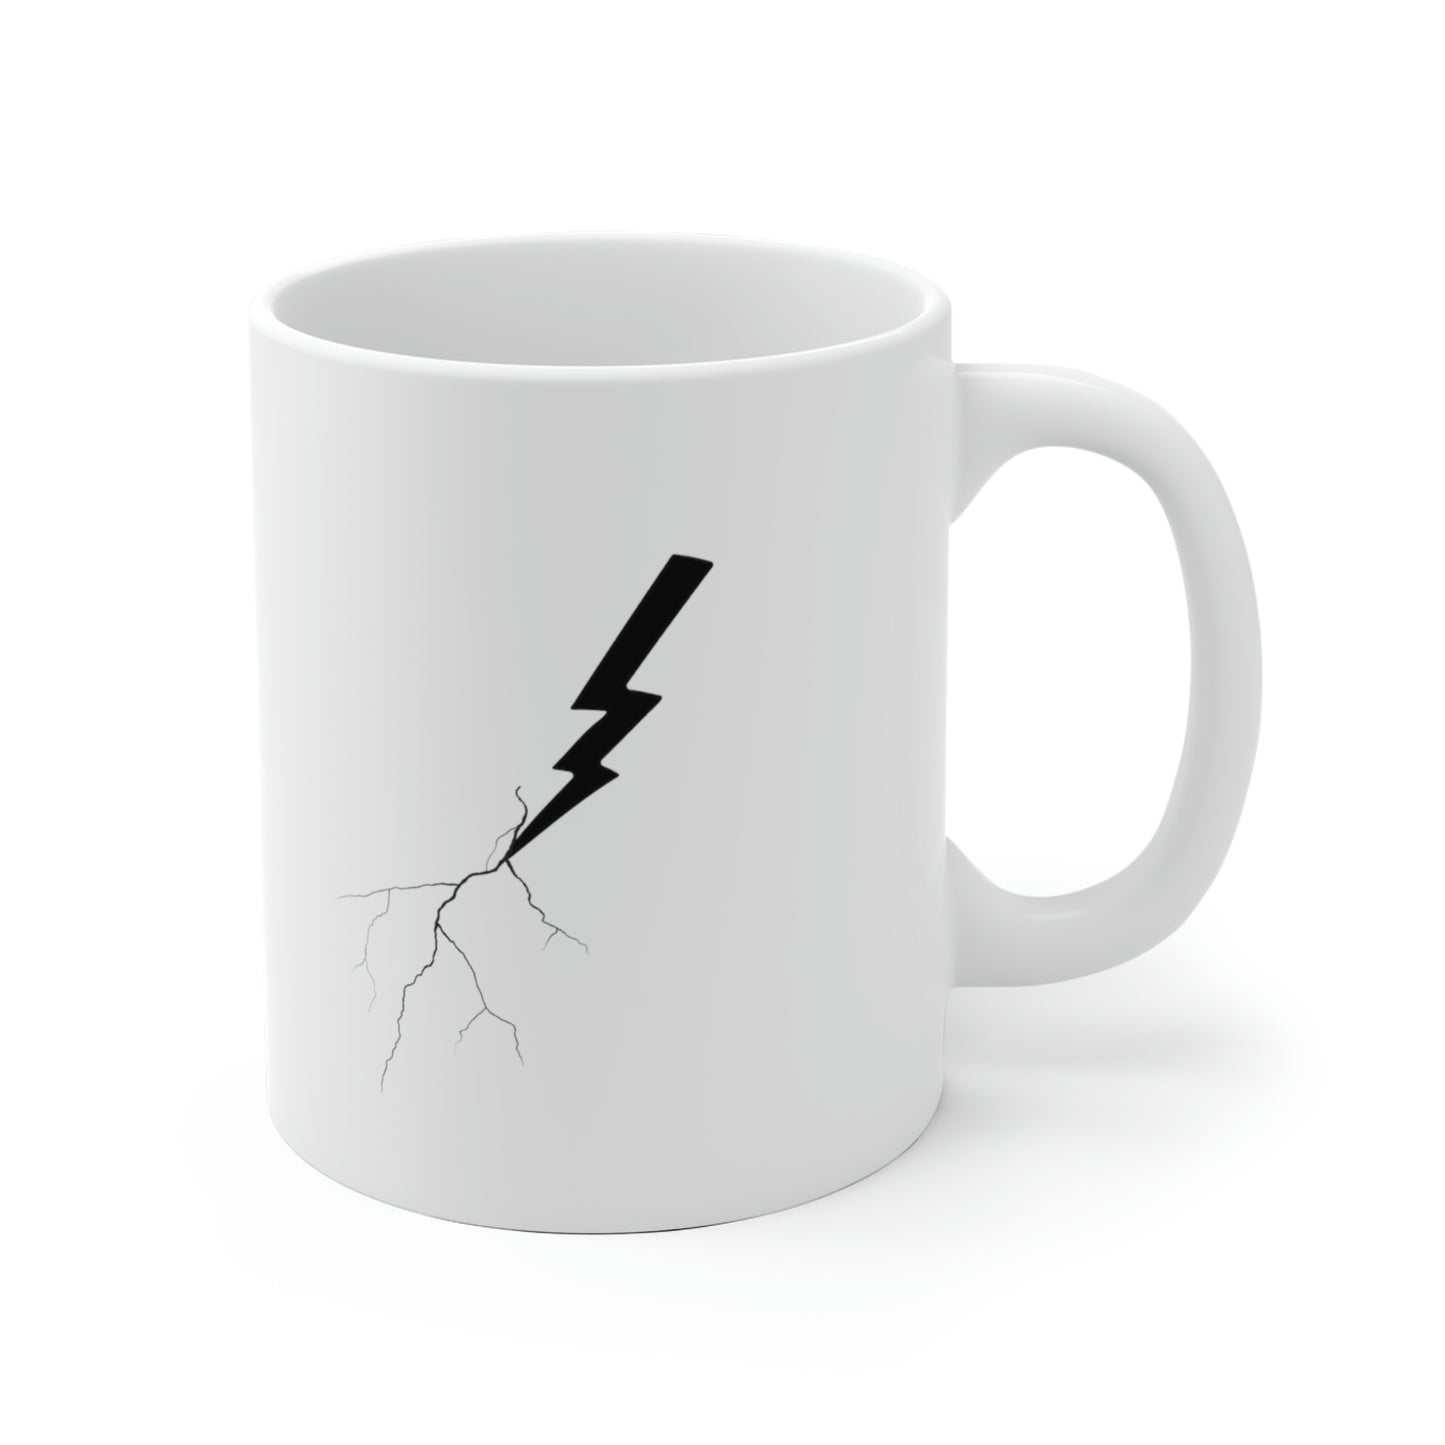 Karma coffee mug - White Ceramic Mug